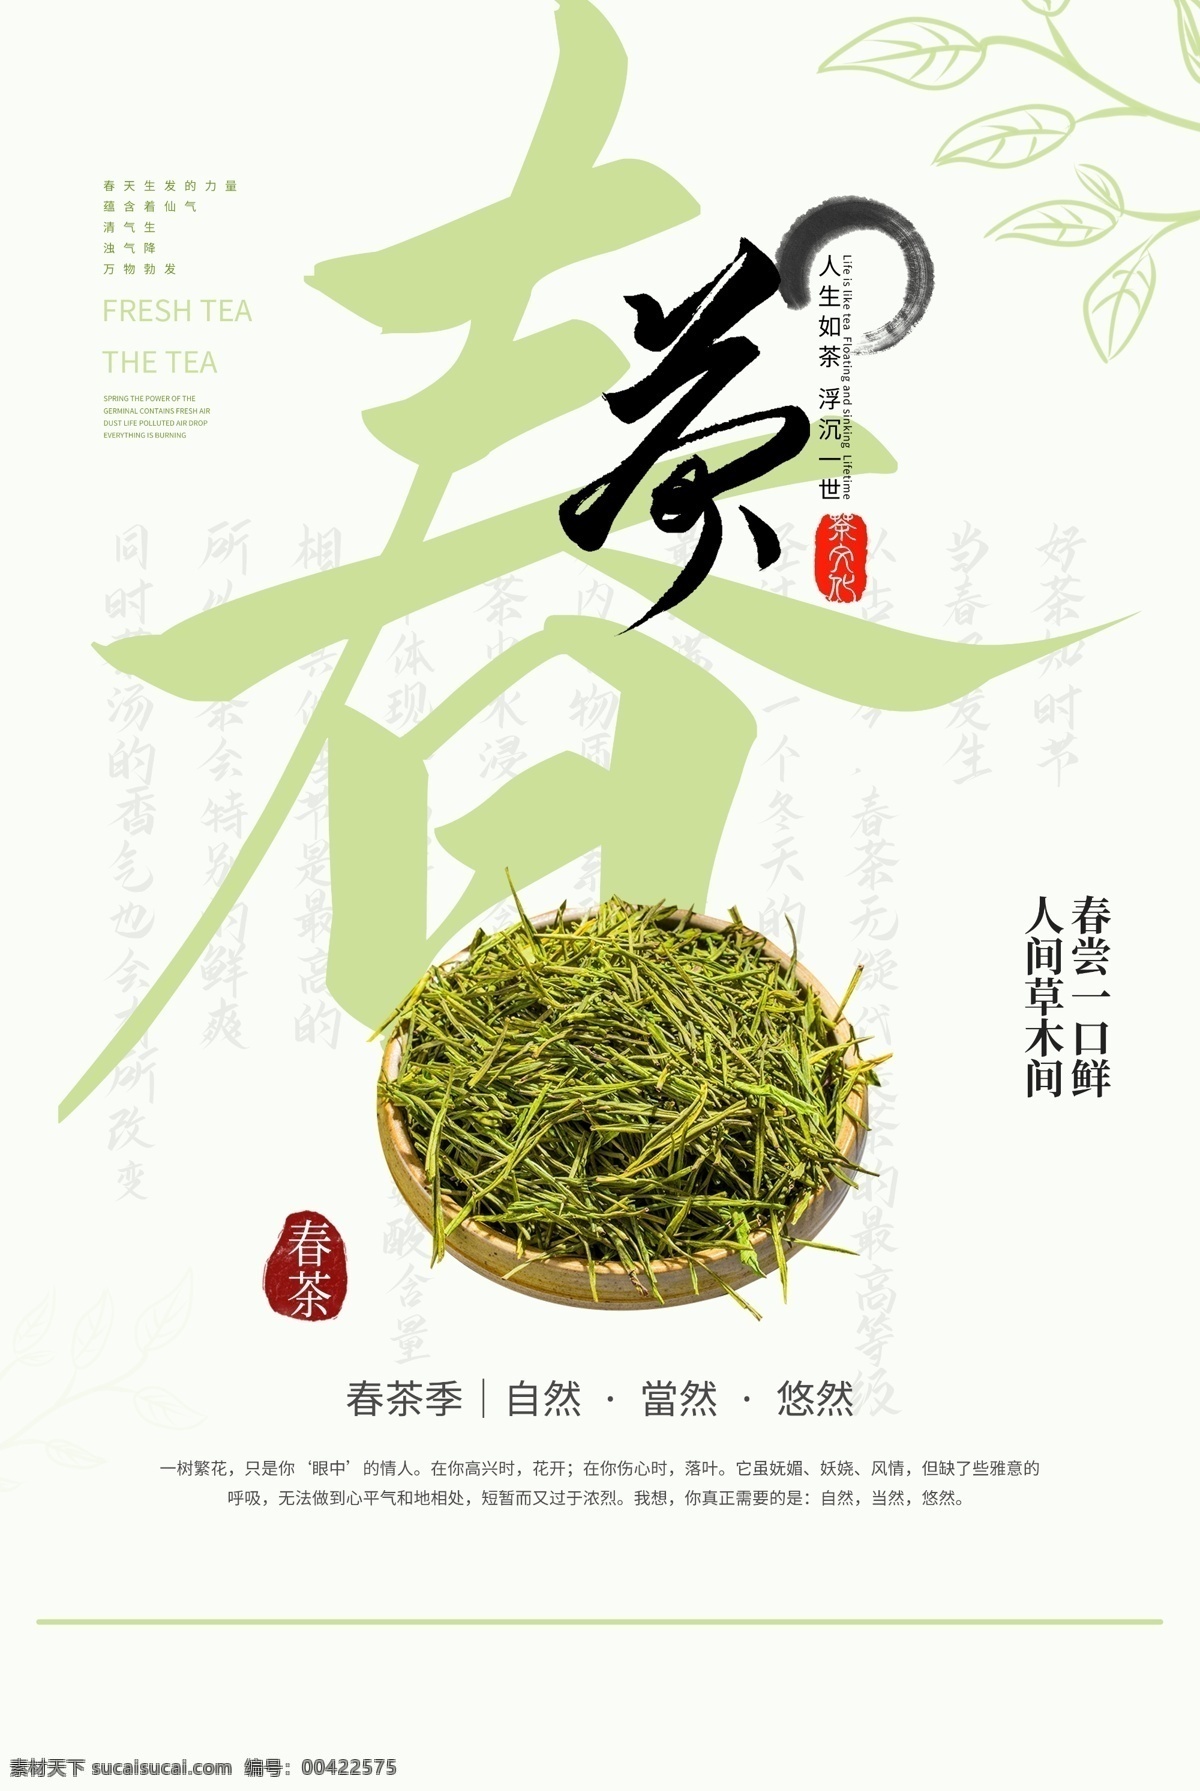 春茶 茶叶 活动 宣传海报 素材图片 宣传 海报